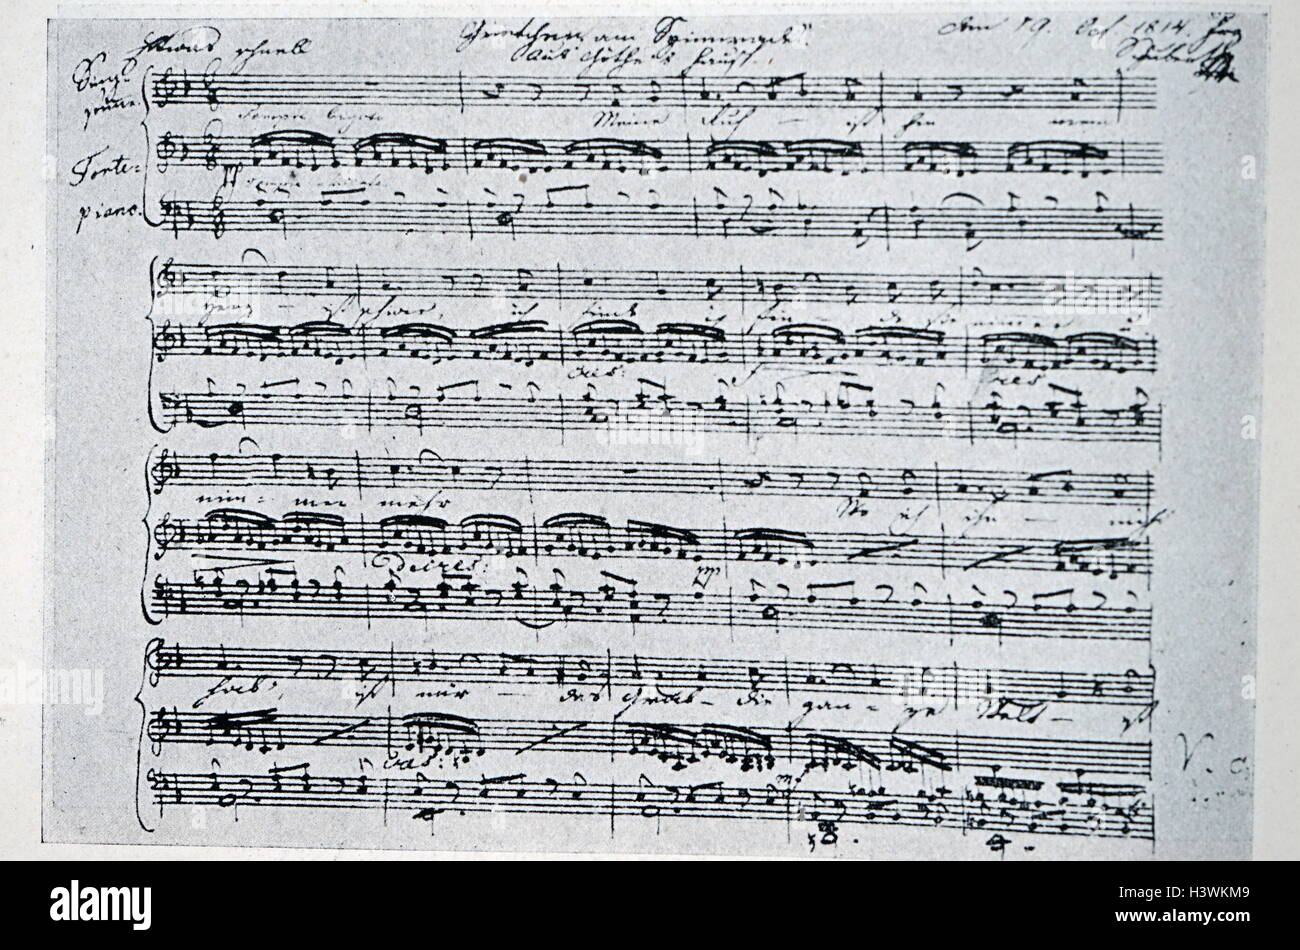 Gretchen am Spinnrade di Franz Schubert (1797-1828) un compositore austriaco. Datata del XIX secolo Foto Stock